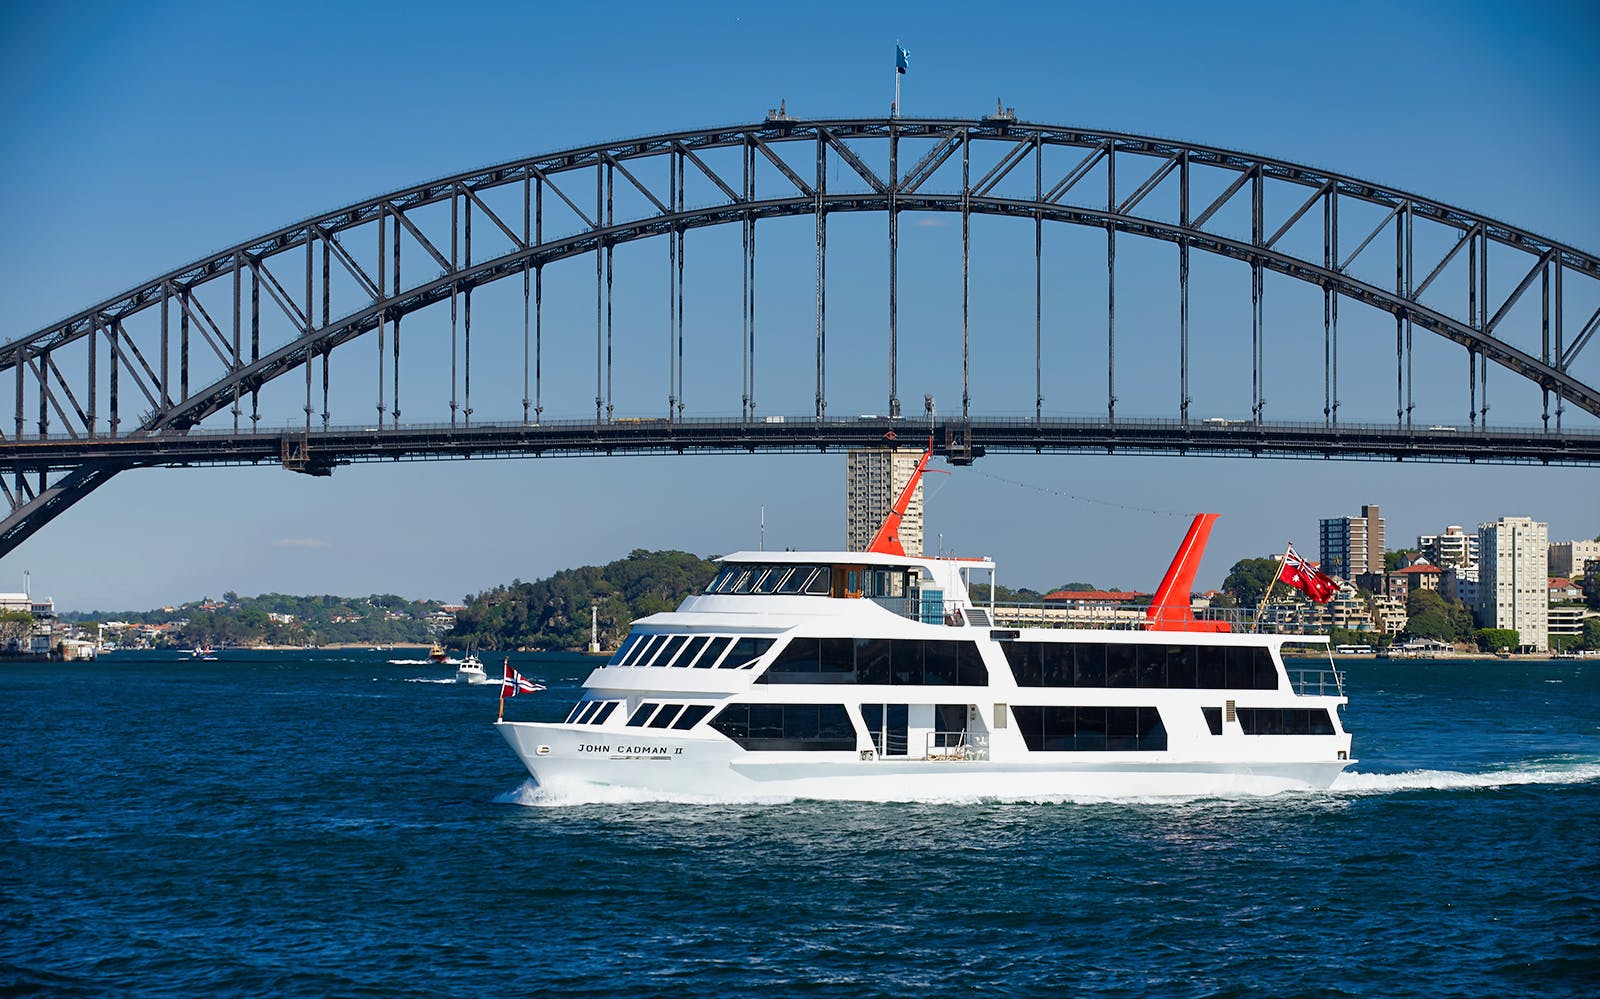 harbour cruises in sydney